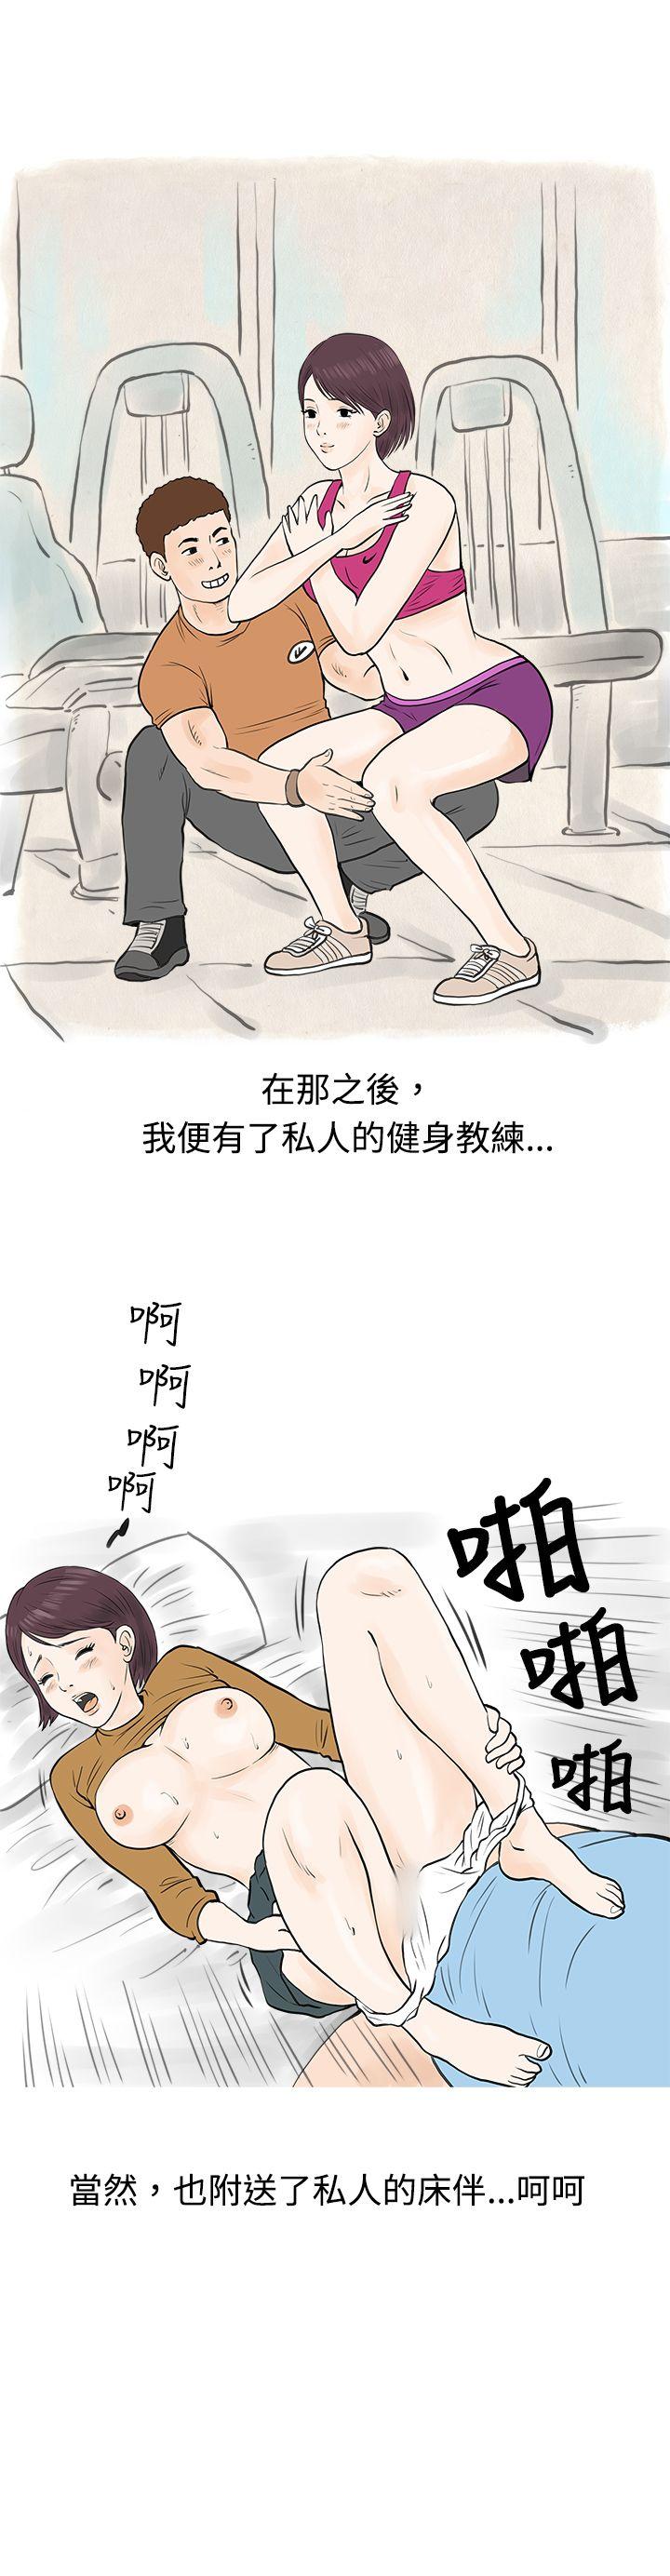 韩国污漫画 秘密Story 到健身房解决需求(下) 13